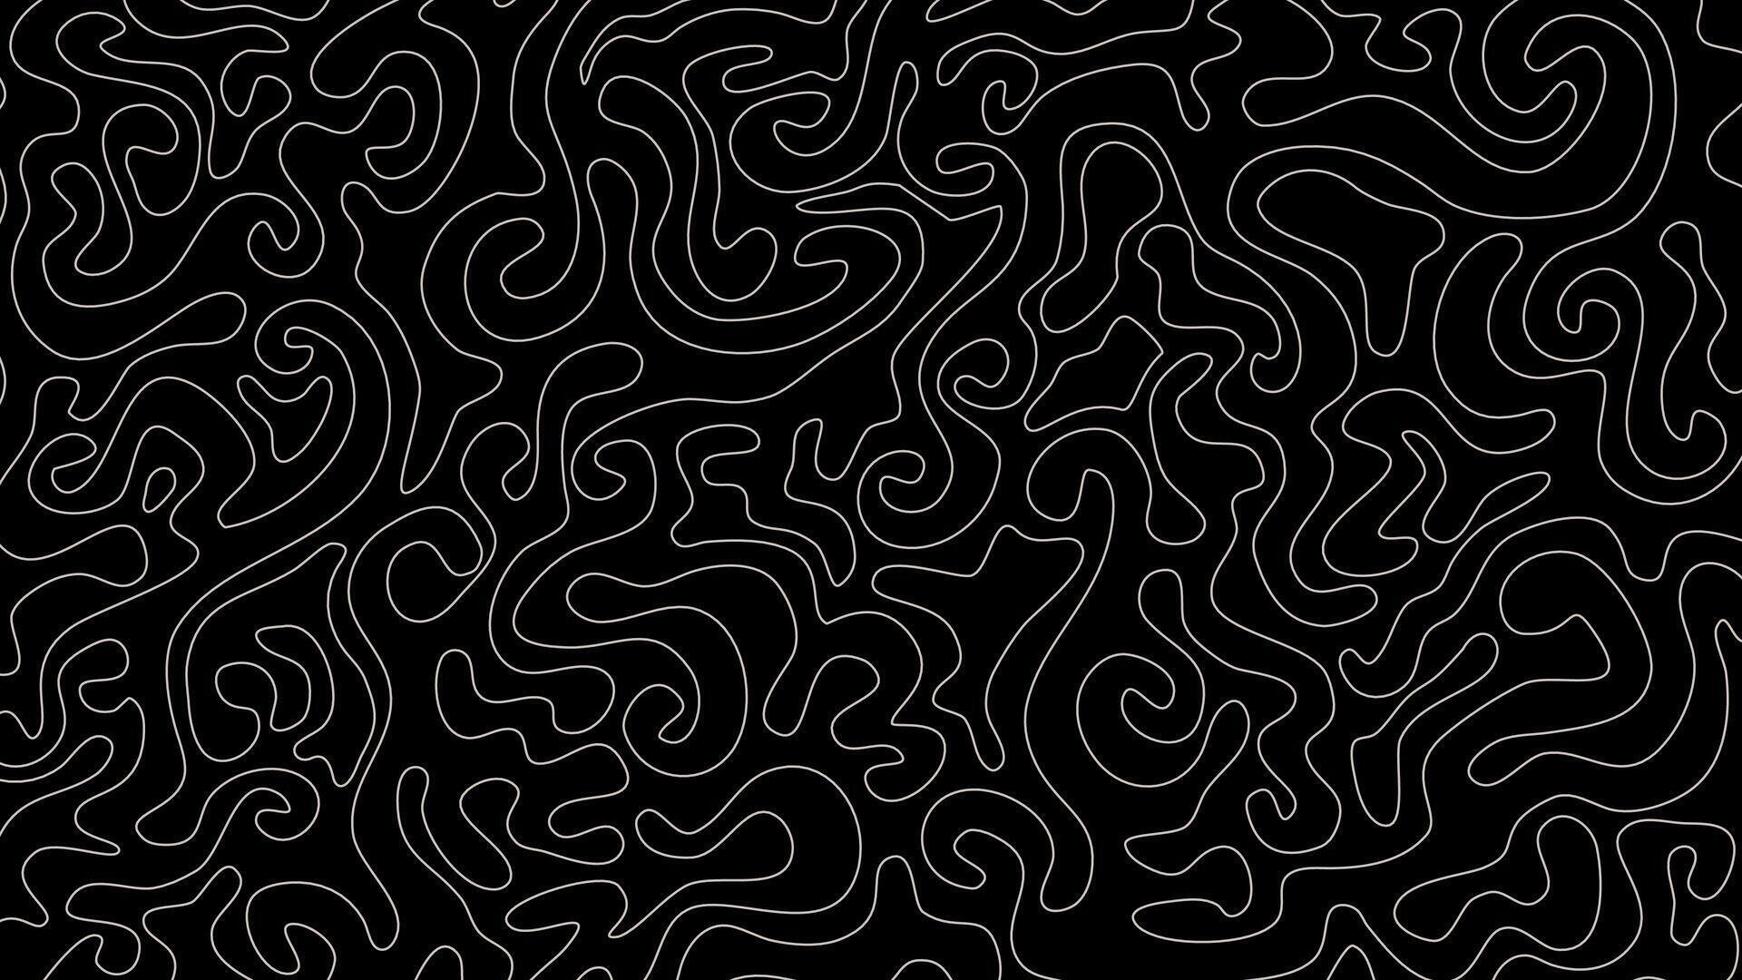 topographic contour background. contour lines background. abstract wavy line background. Topographic map contour background. vector